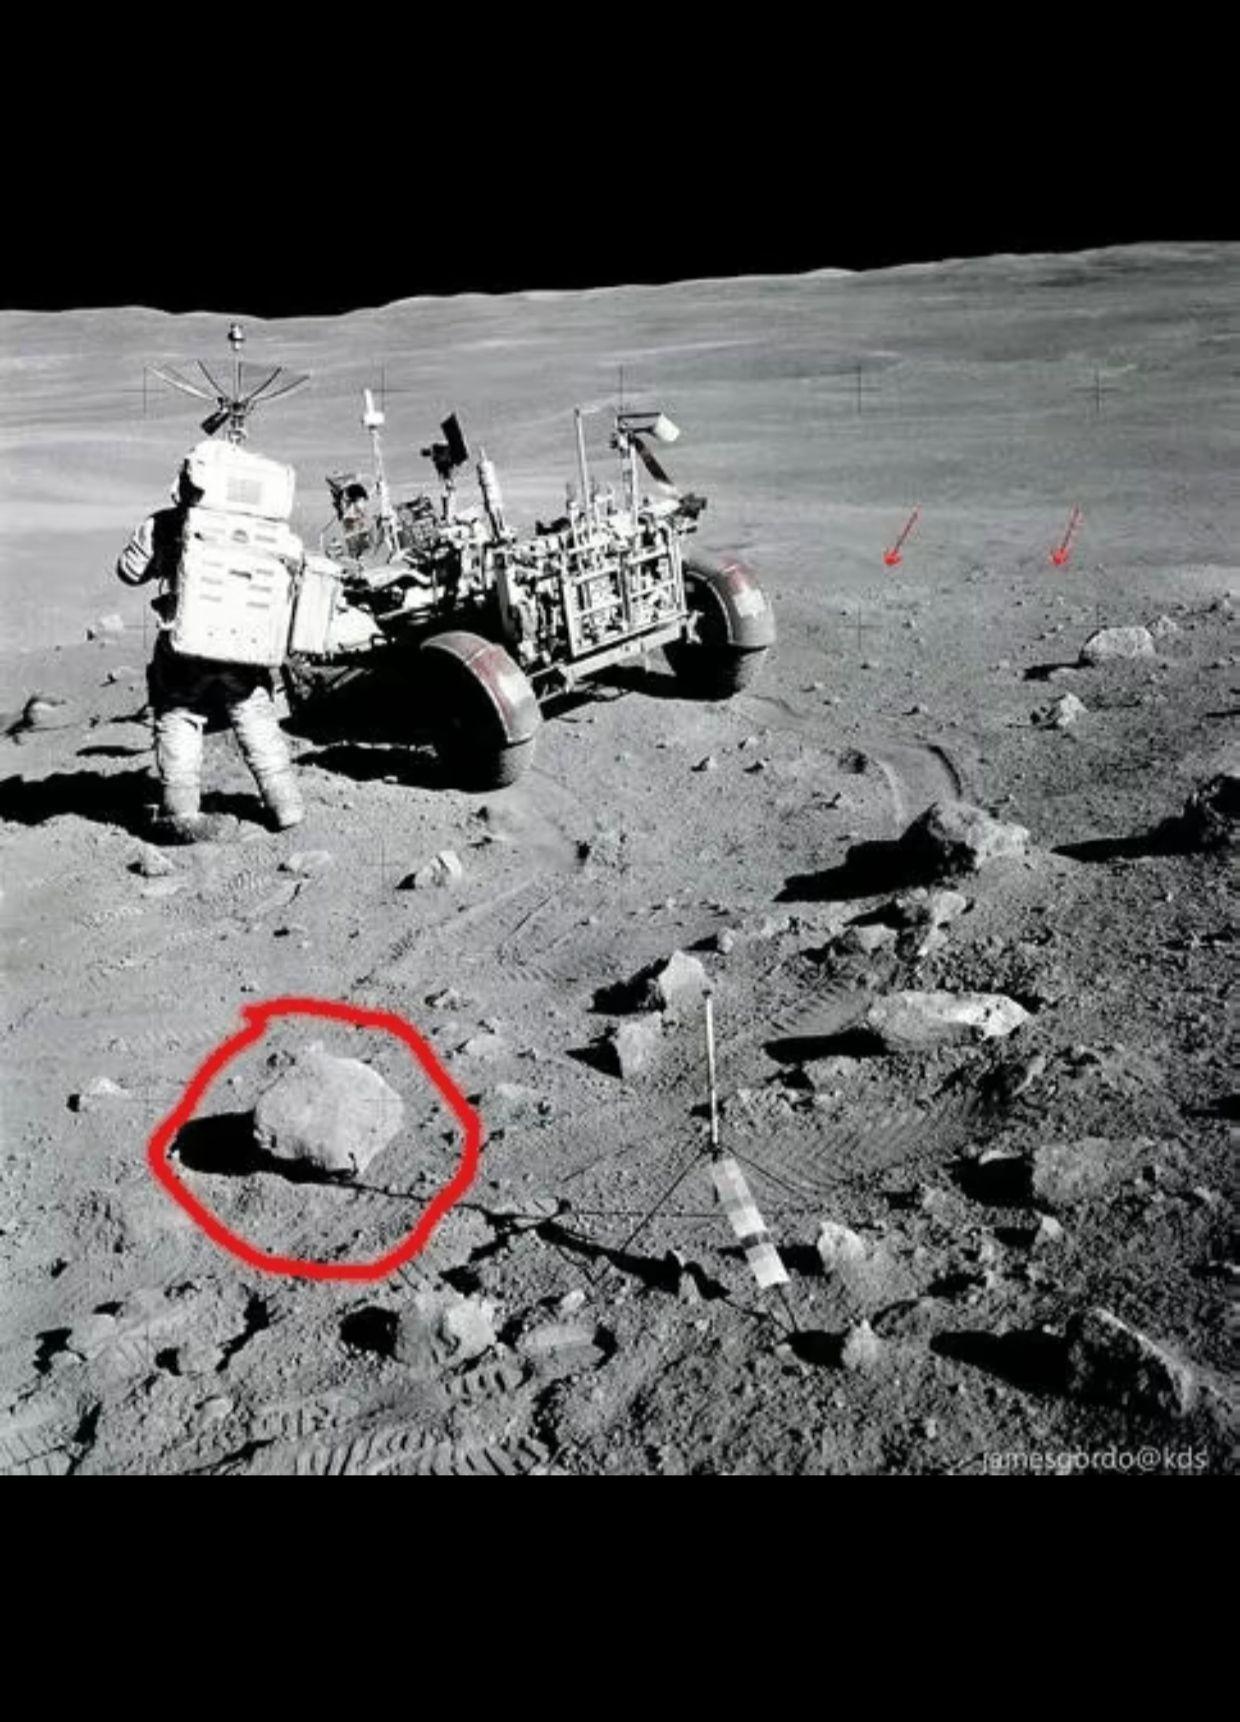 美国ai声称,分析后发现部分阿波罗登月照片是伪造的